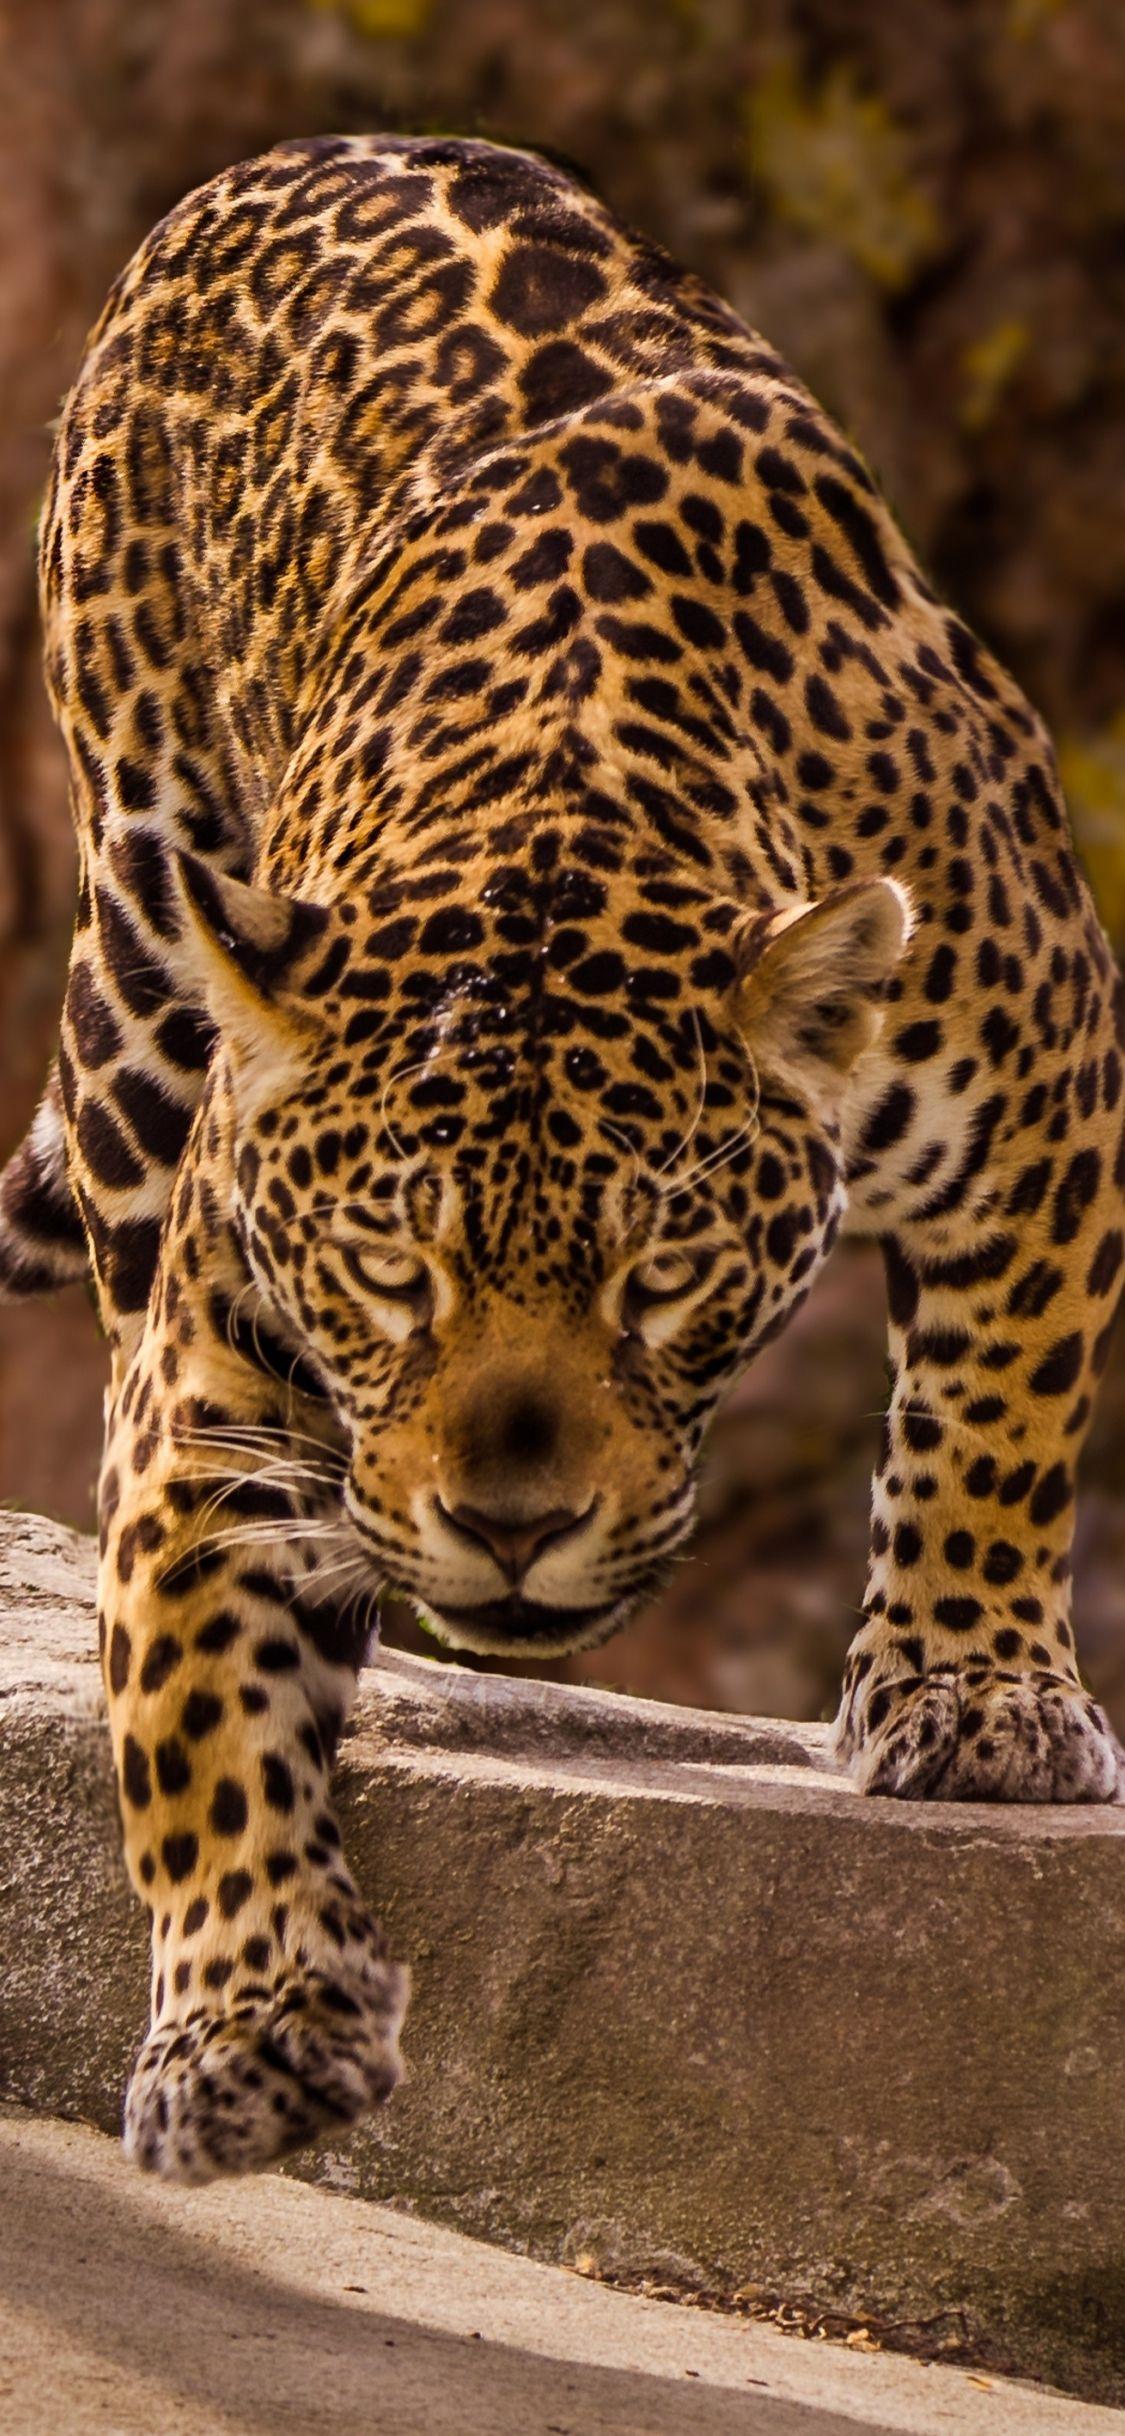 Black Panther Animal, Black Jaguar Animal HD wallpaper | Pxfuel